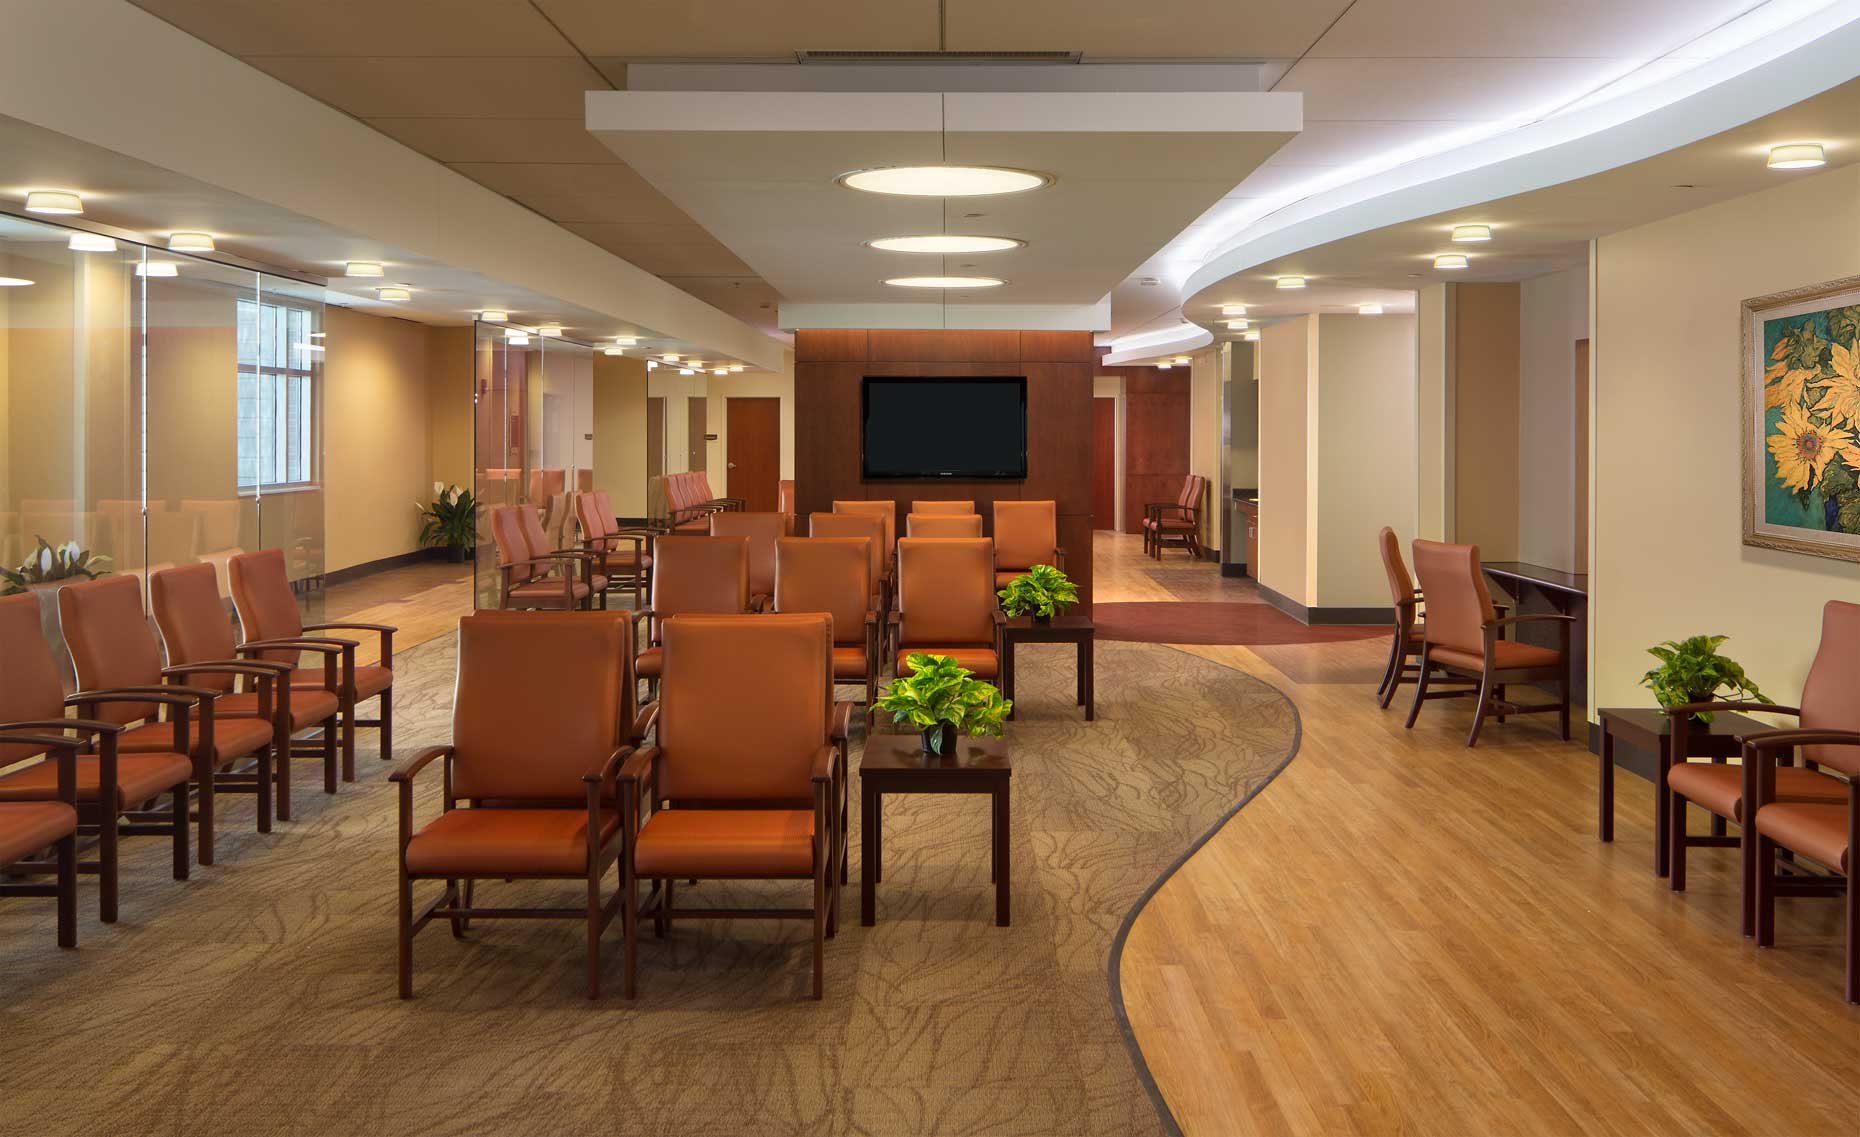 Saint Francis Hospital | Clinic Services Building Waiting Room<br>Howell Rusk Dodson / 2WR / Skanska USA